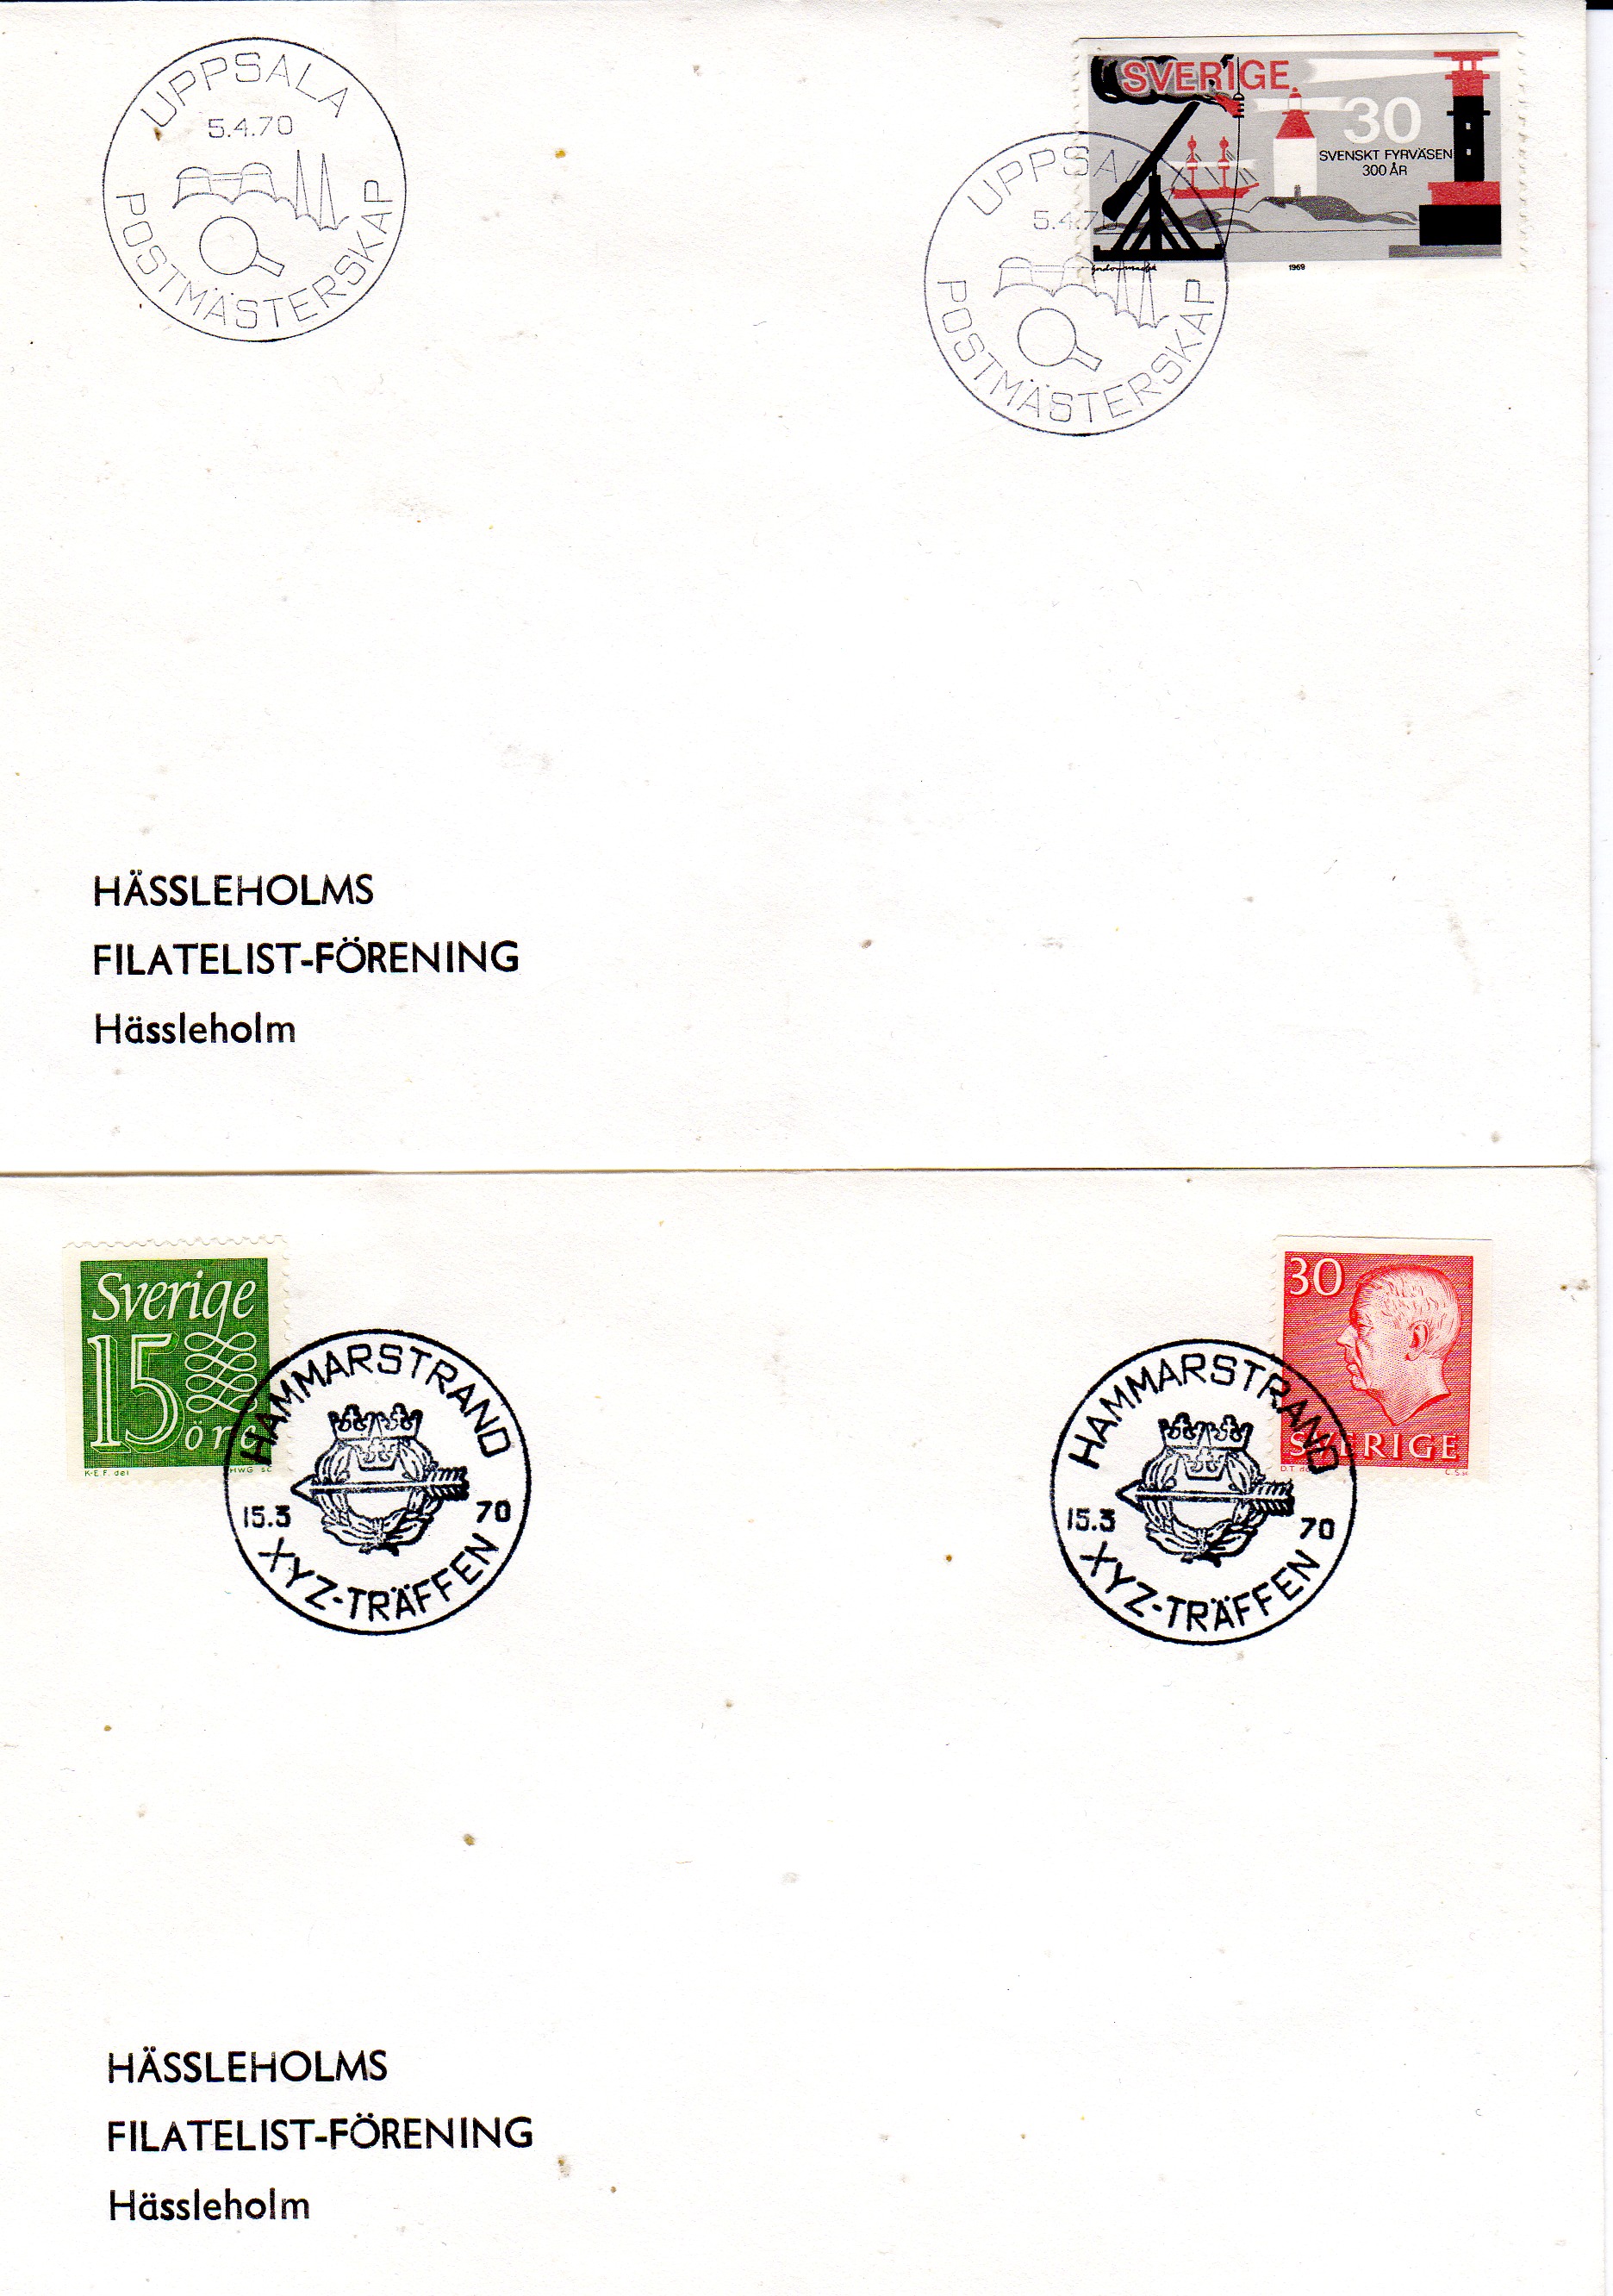 st Uppsala Postmästerskap 1970 og XYZ träffen Hammarstrand